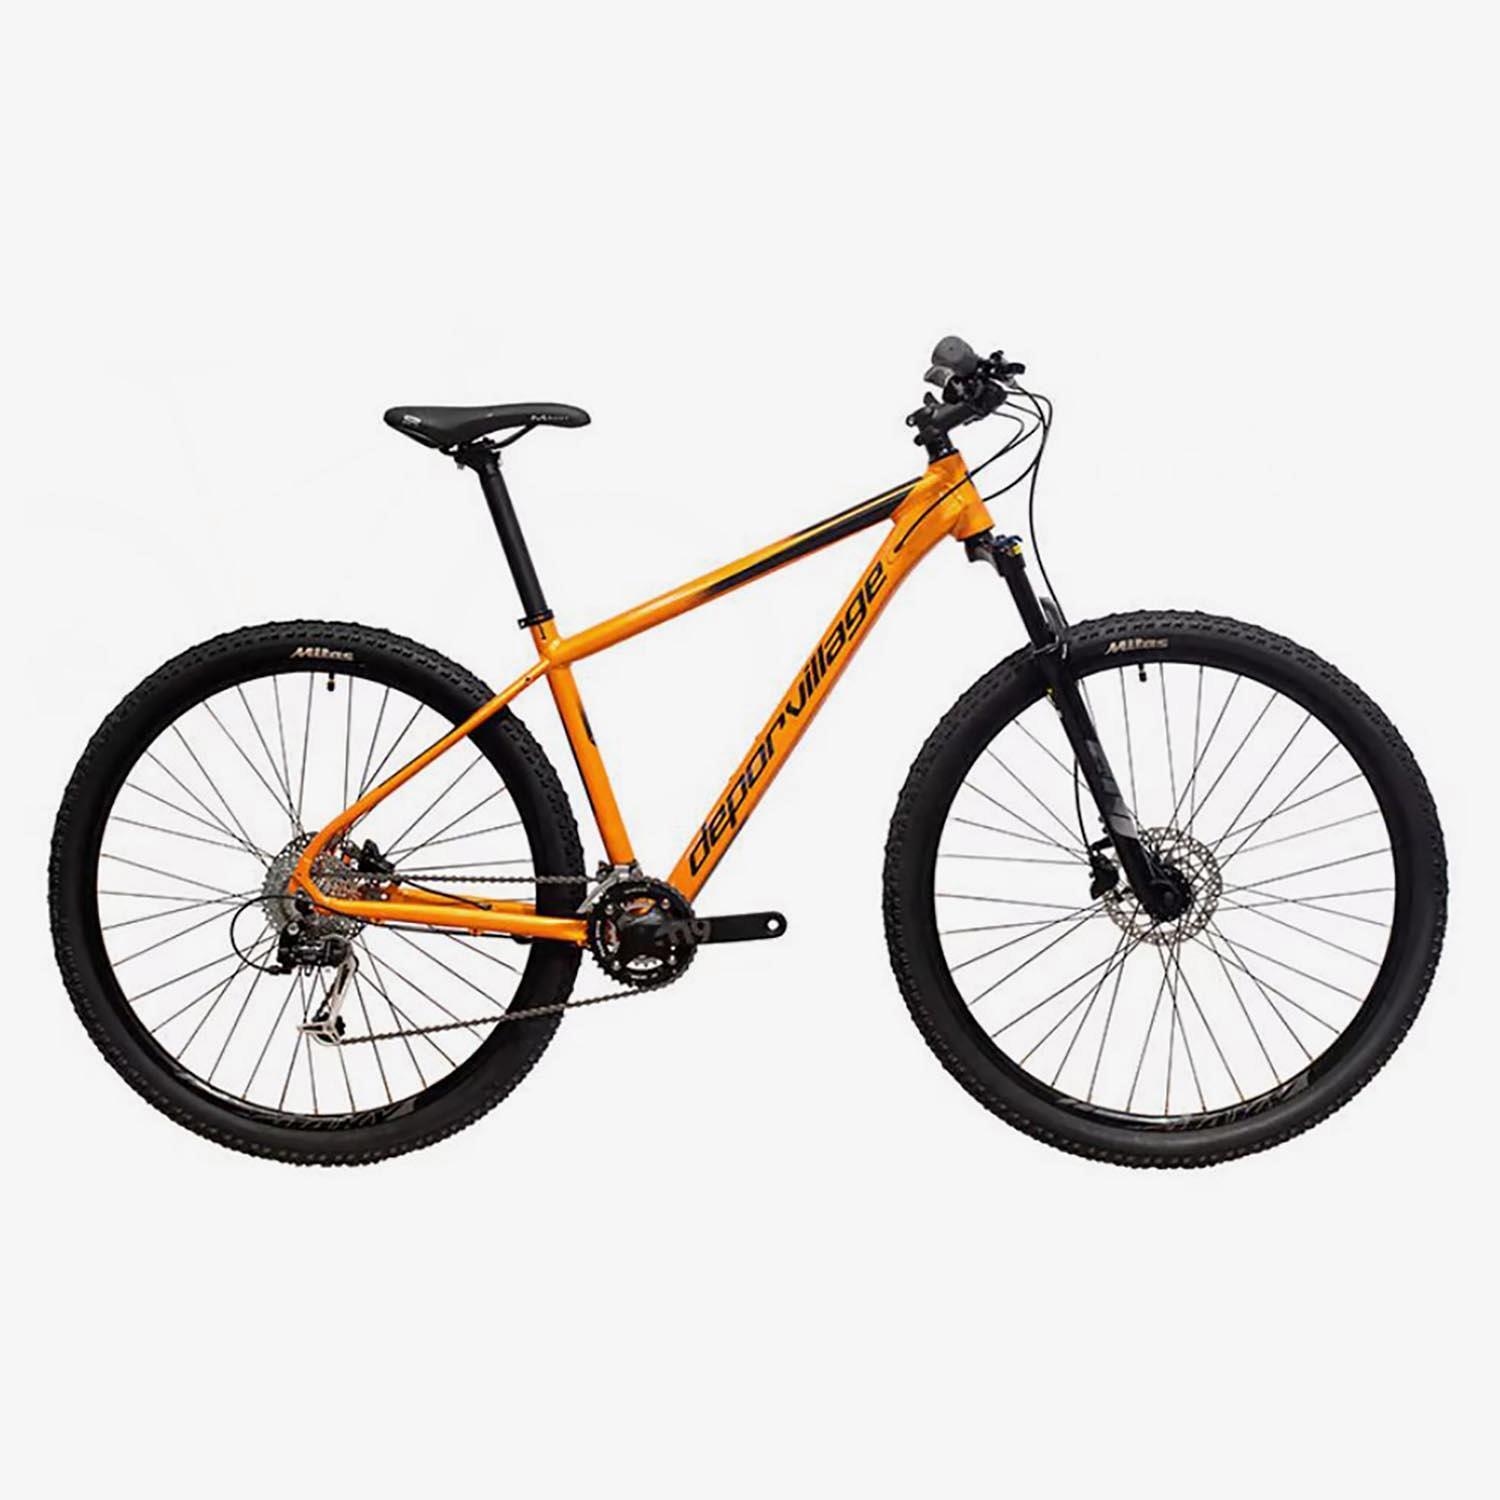 Deporvillage Pr500 29 - Orange - Vélo de montagne sports taille M